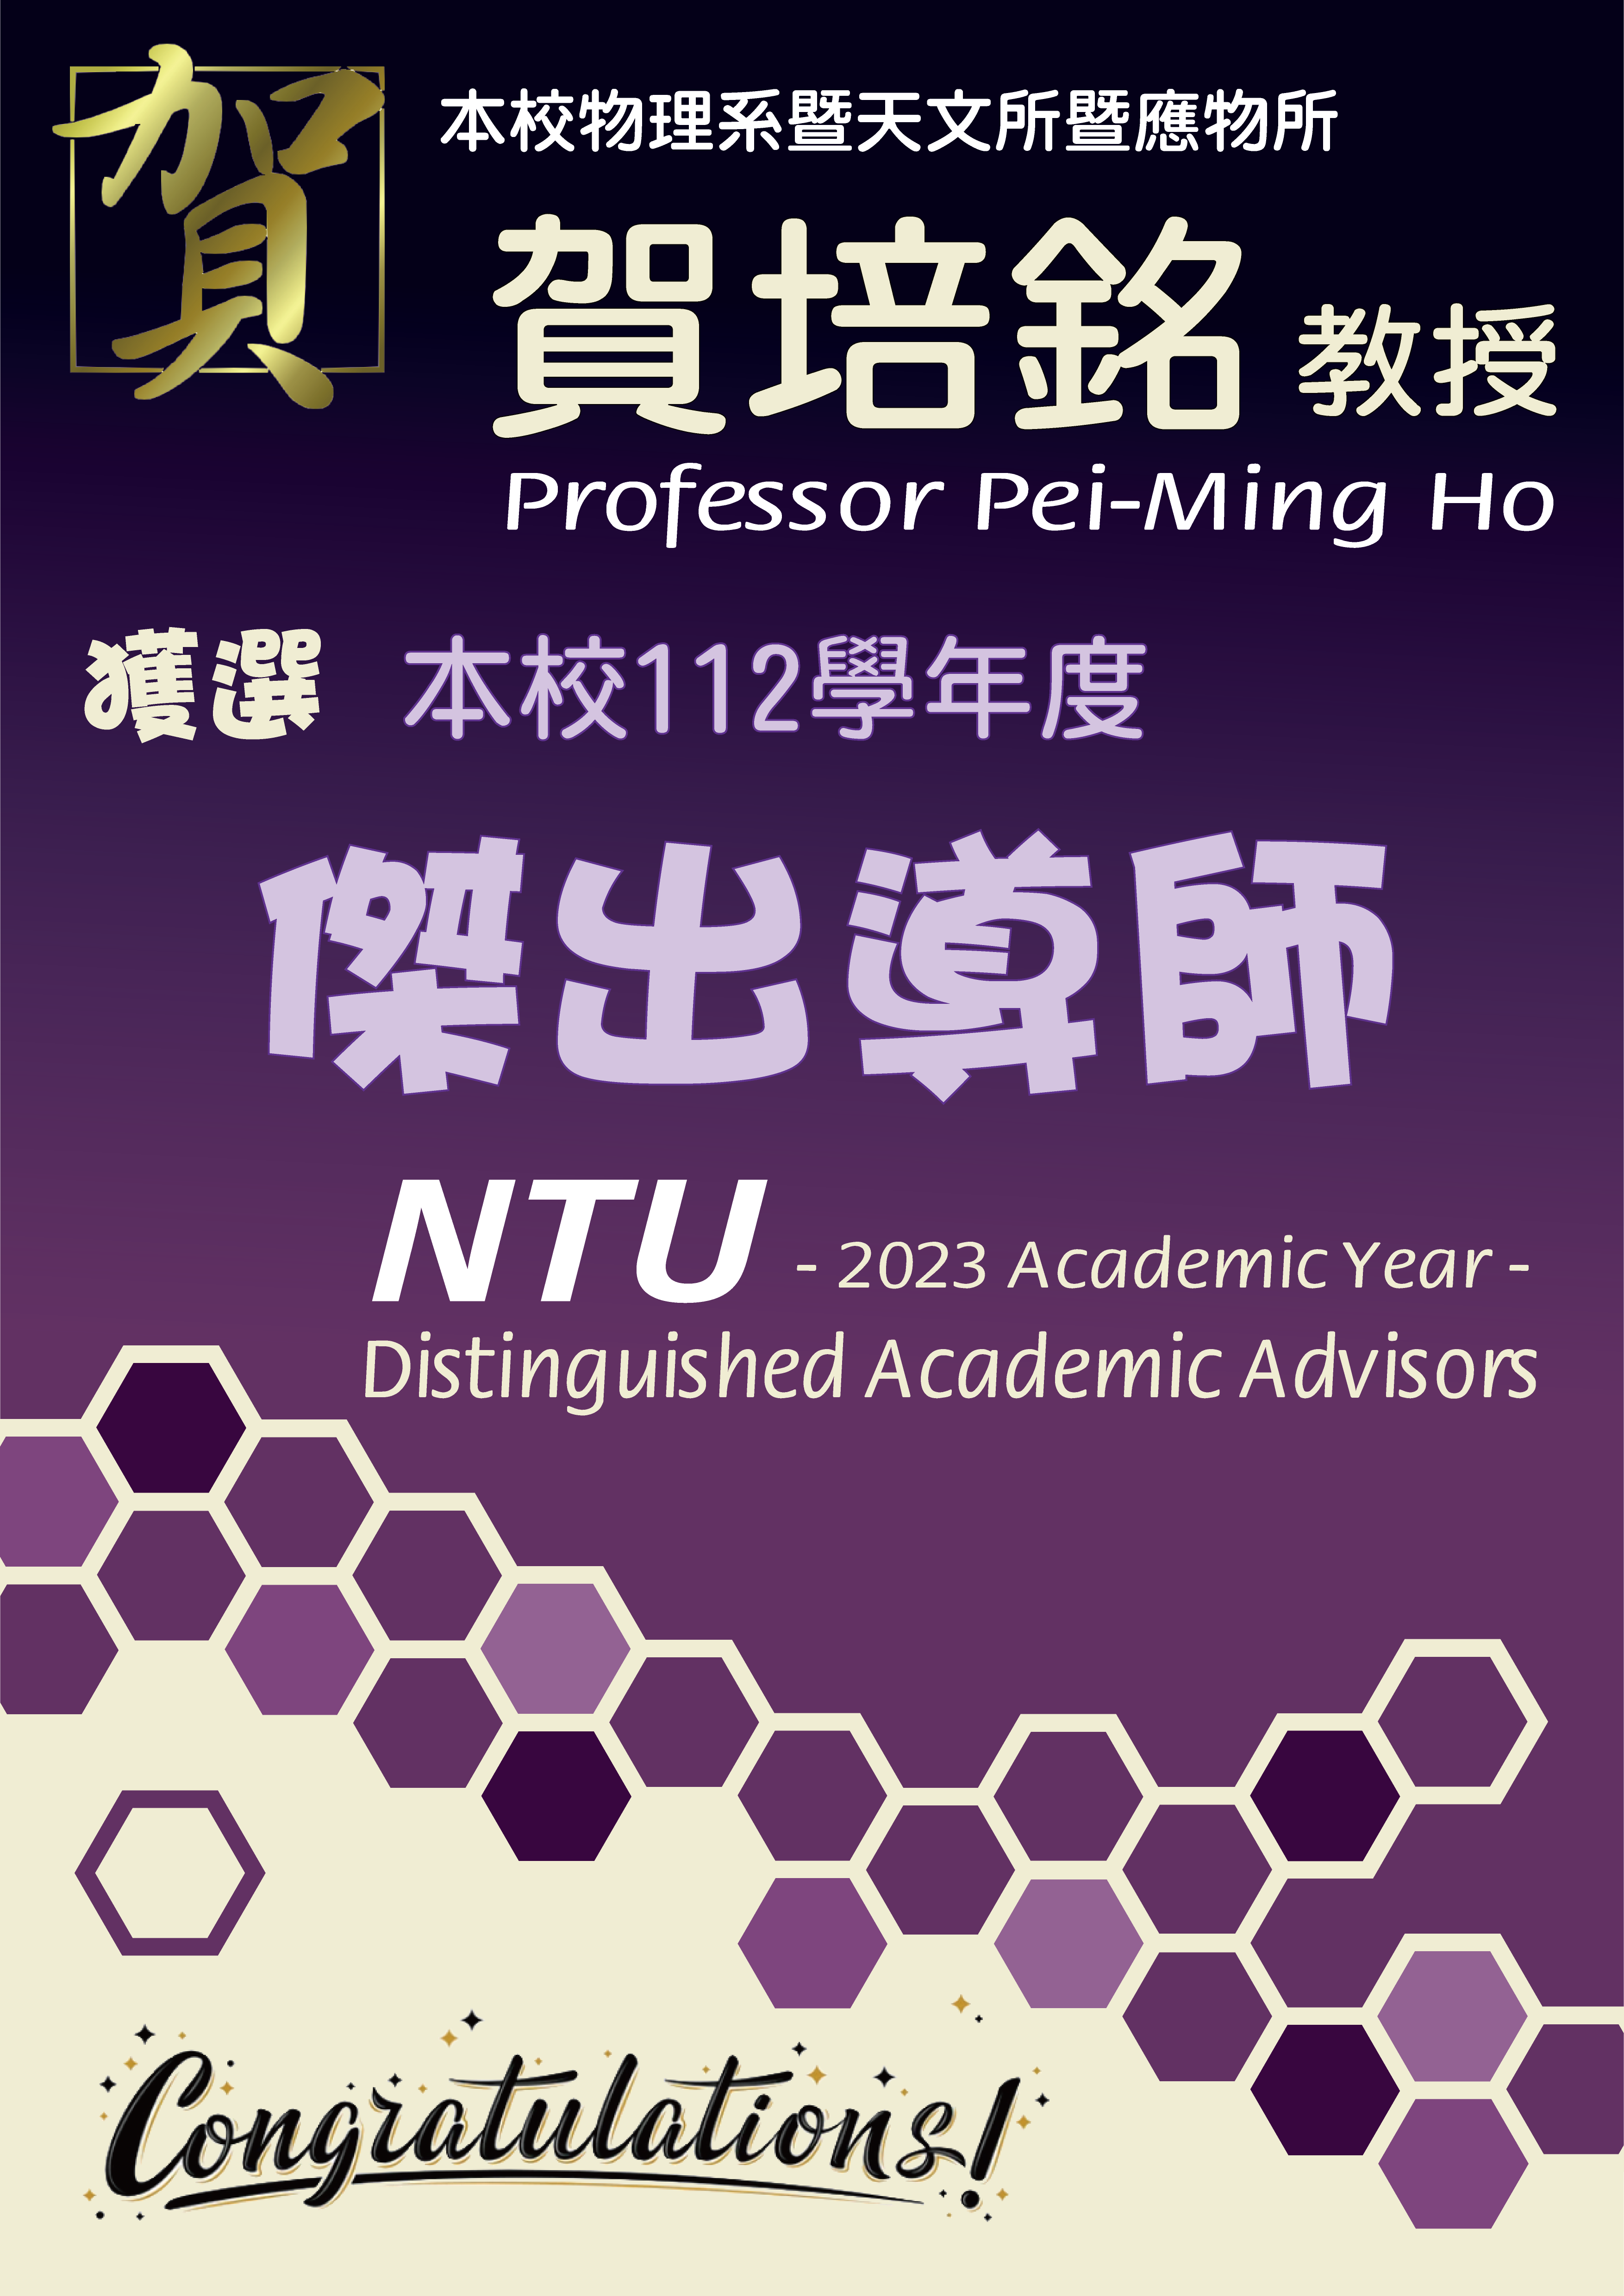 《賀》本系 賀培銘 教授 Prof. Pei-Ming Ho 獲選 本校 112學年度《傑出導師》(NTU Distinguished Academic Advisors)